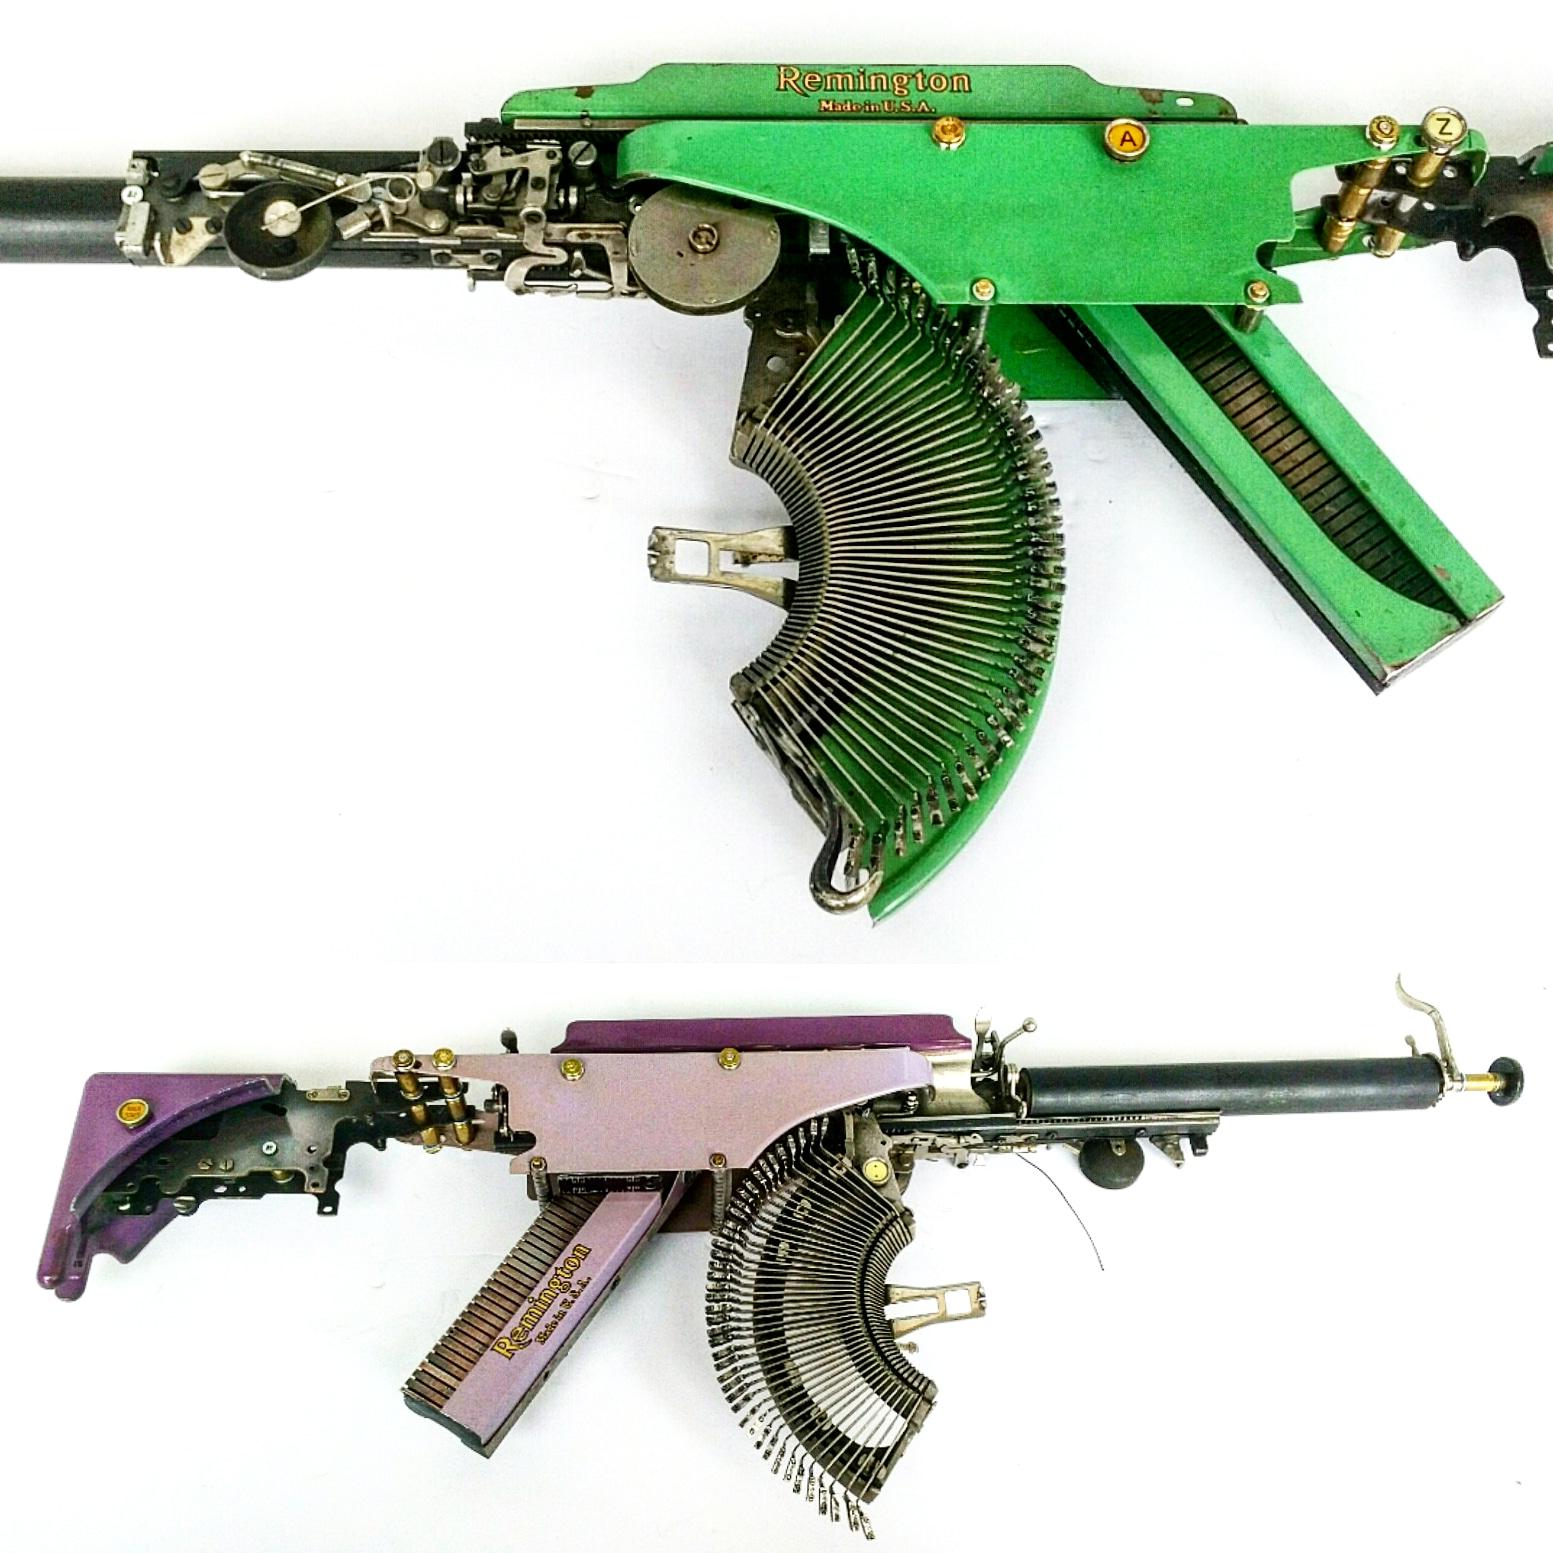 Typewriter Machine Guns by Eric Nado - The 